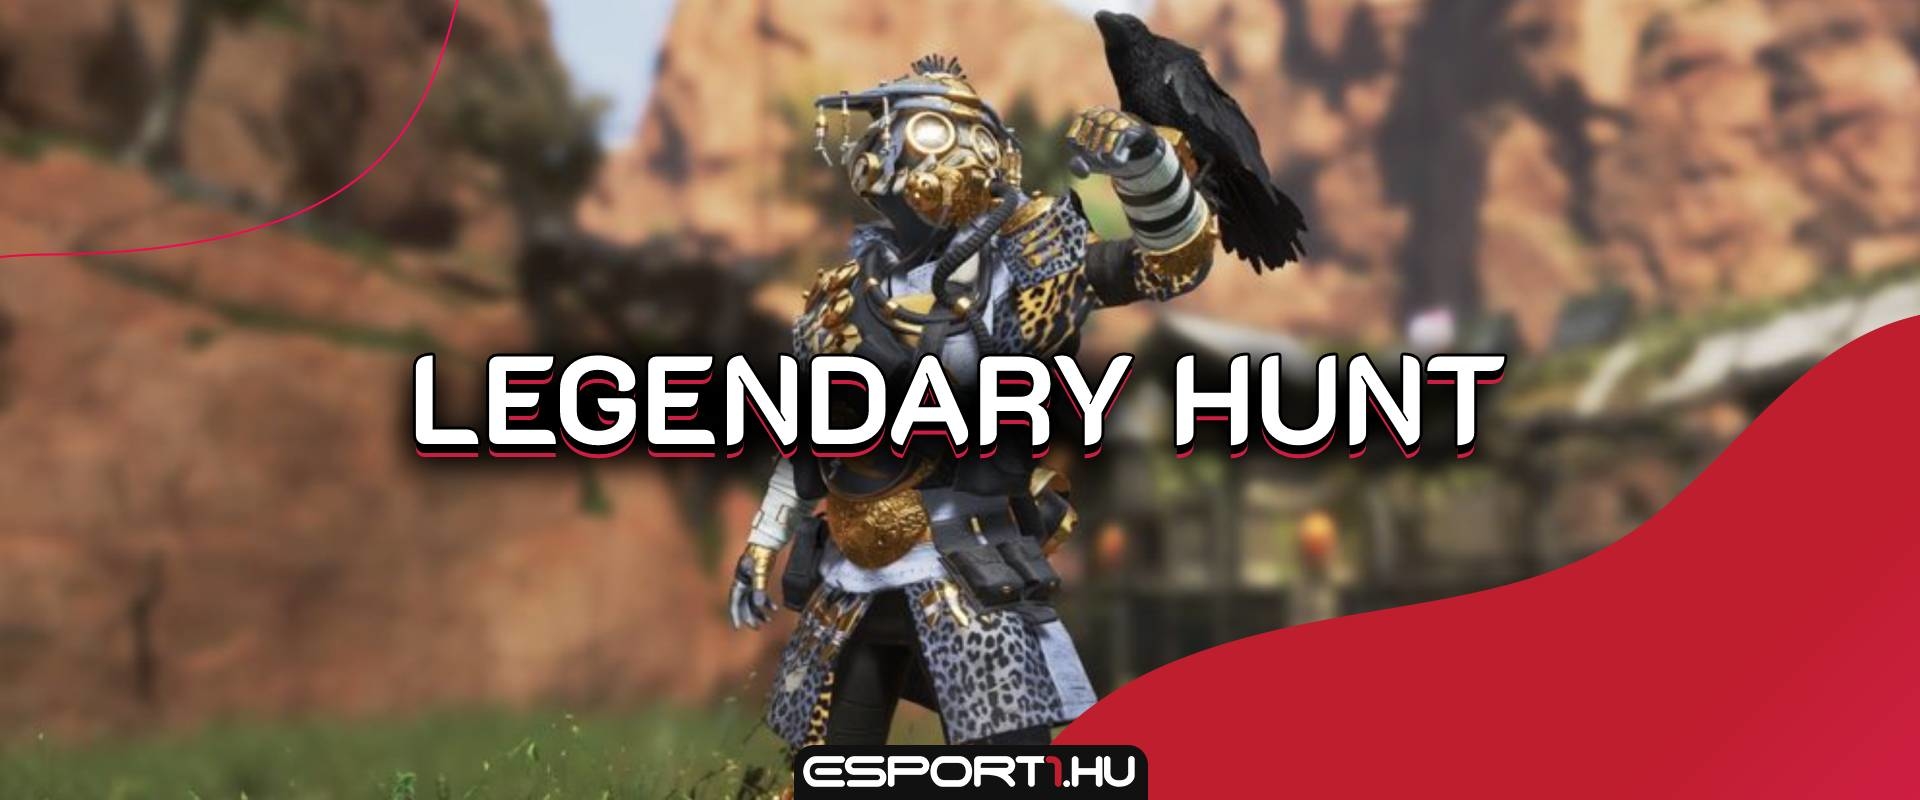 Érkezik az Apex Legends első limitált idejű eseménye, a Legendary Hunt